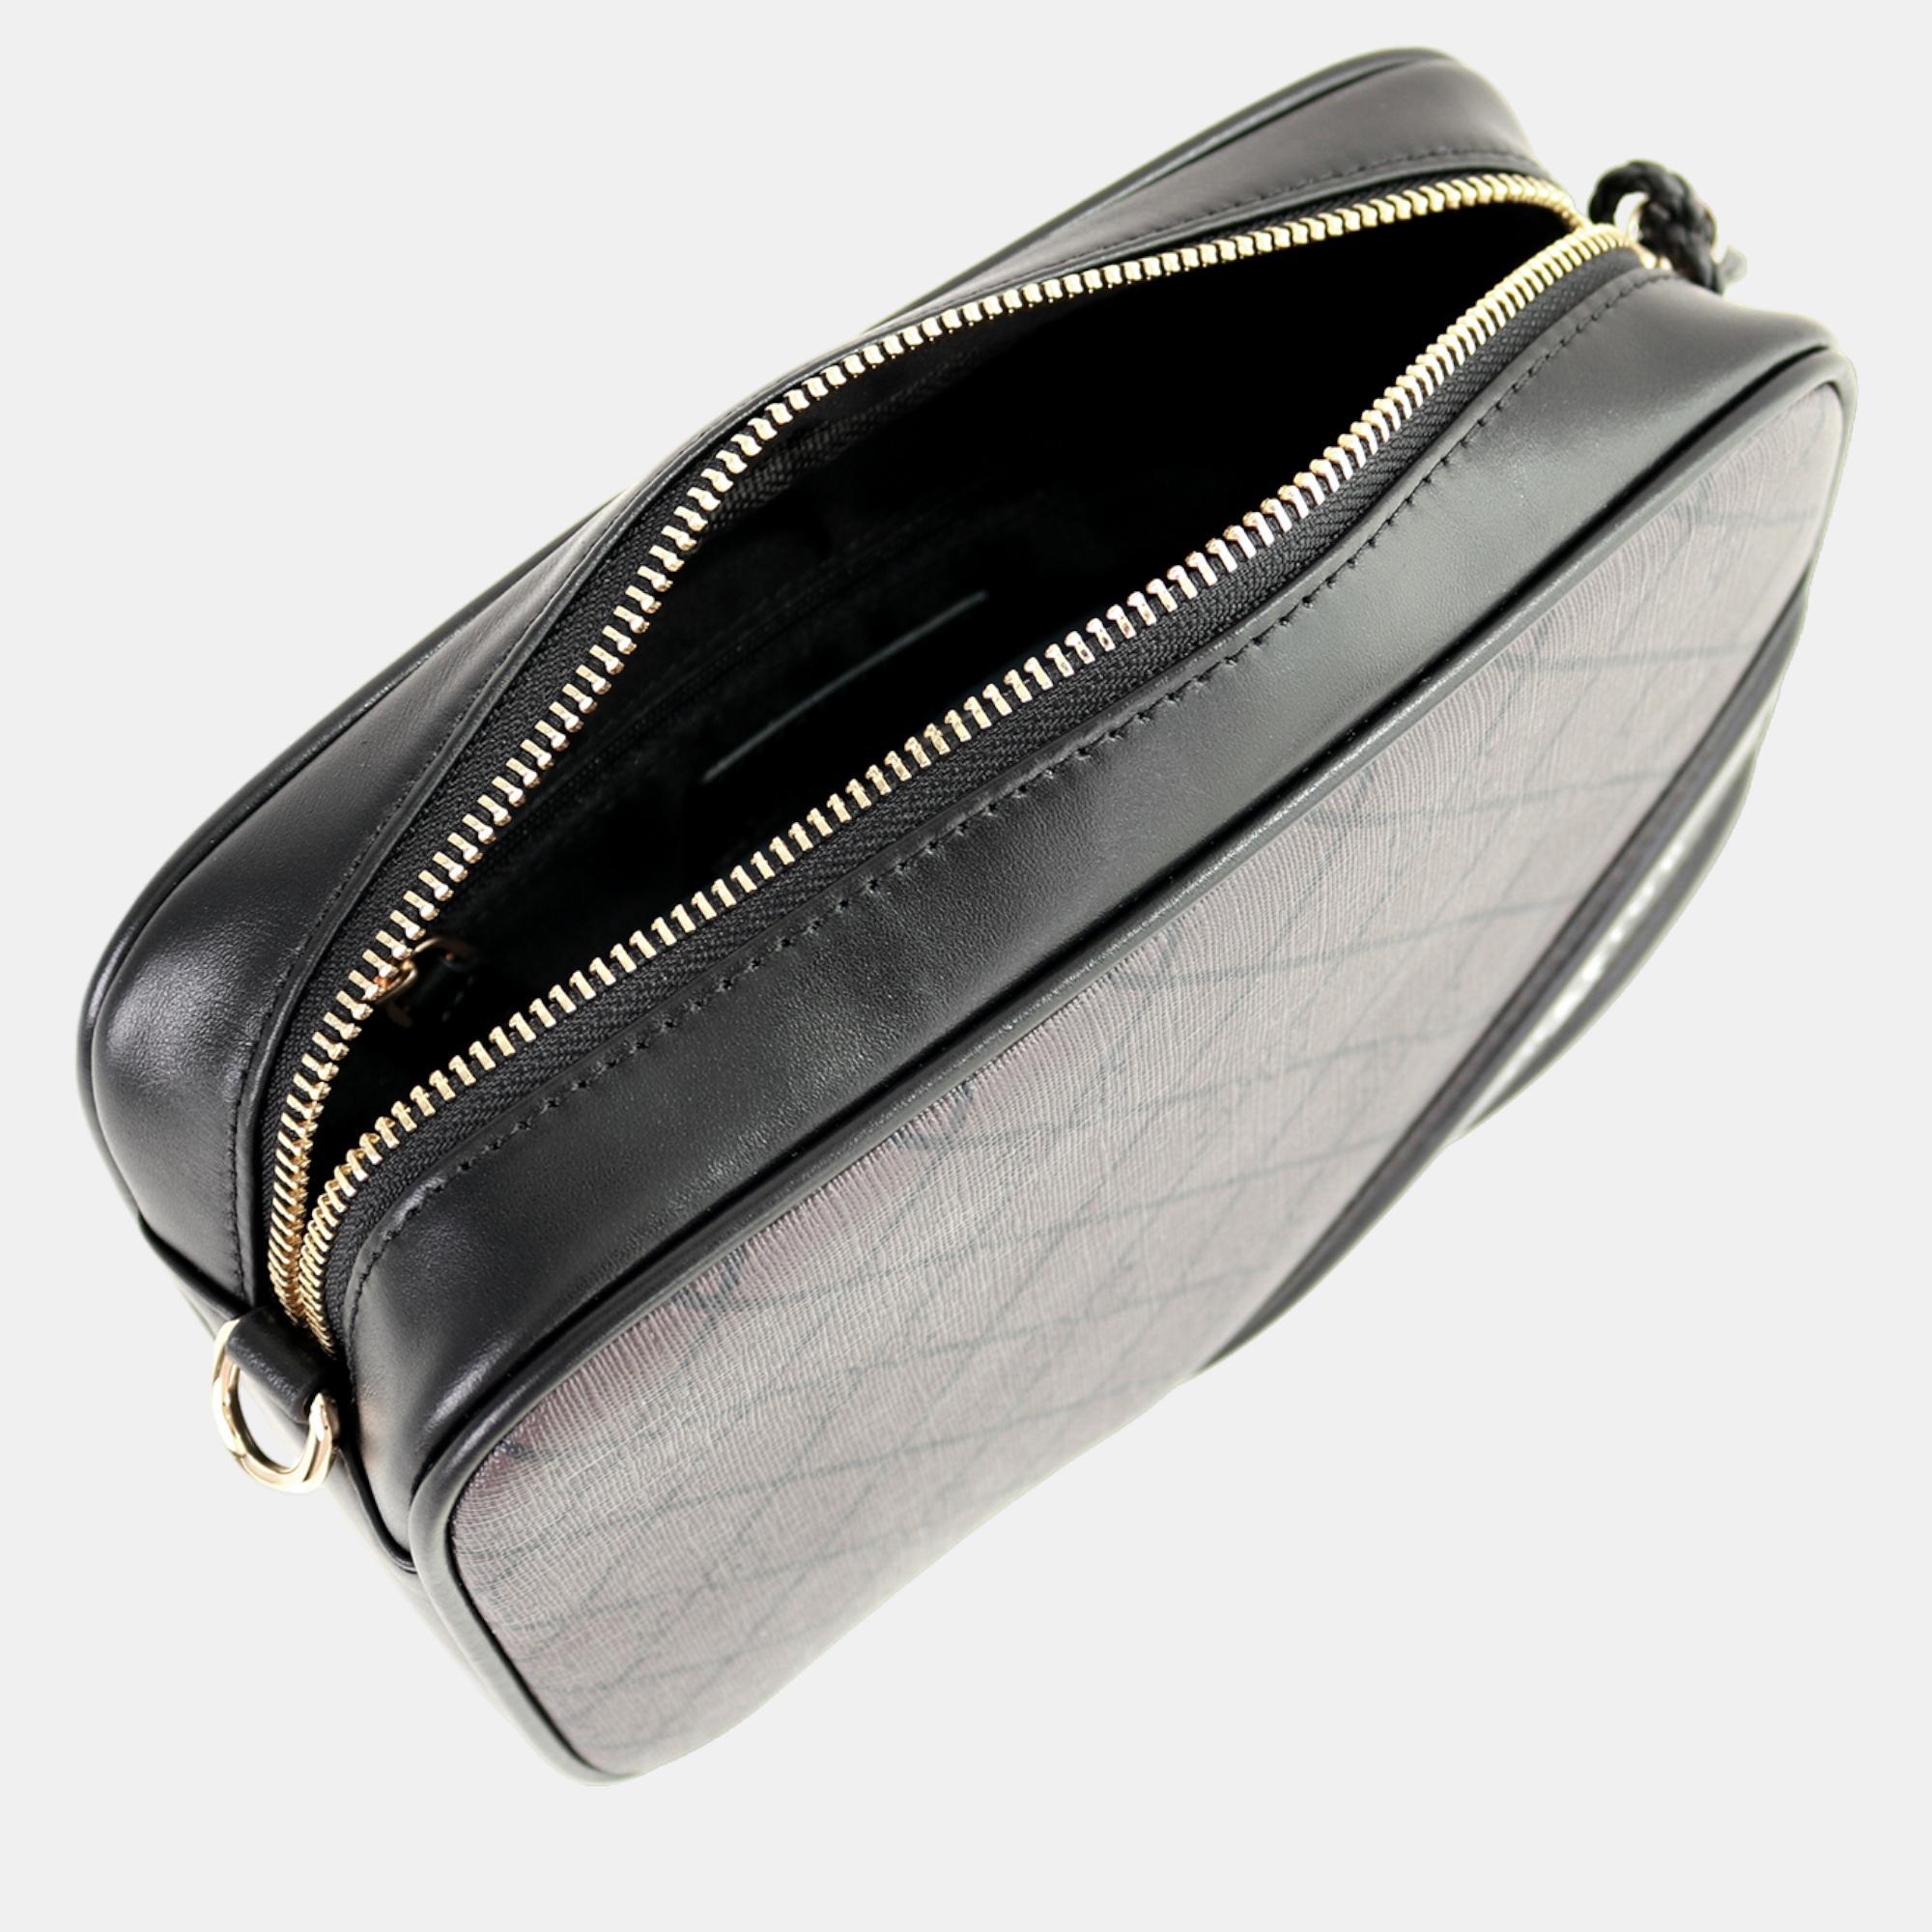 Charriol Brown Leather CALYPSO Handbag